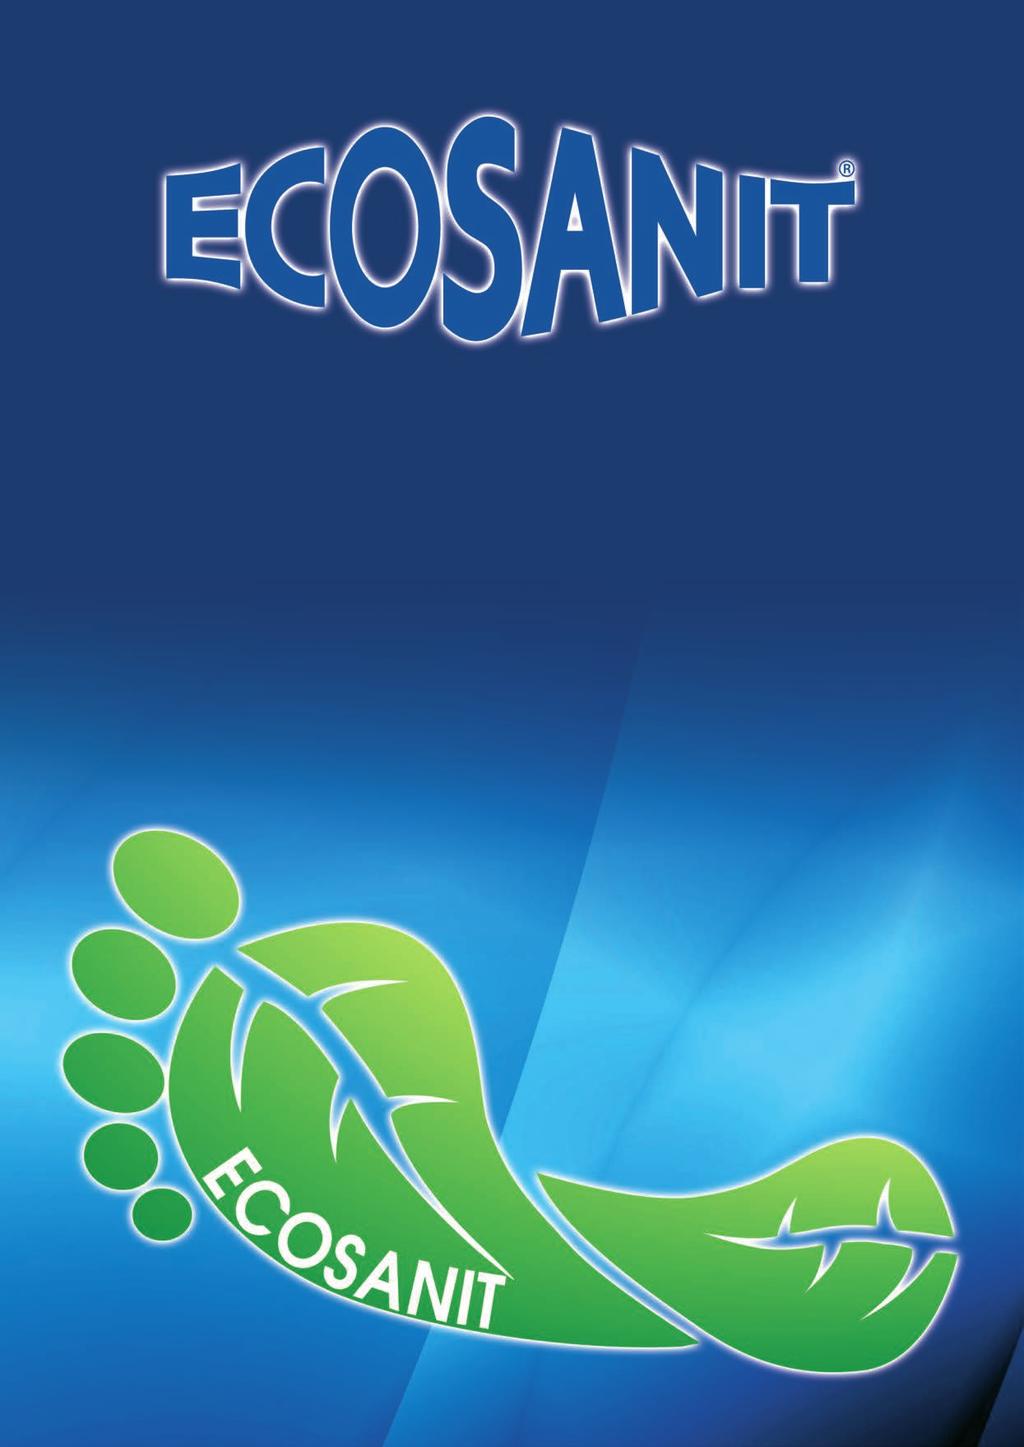 ECOANIT è un azienda focalizzata sul piede, ed in particolare sulla produzione di calzature e tutori per la prevenzione e trattamento delle principali patologie del cammino quali metatarsalgie, dita